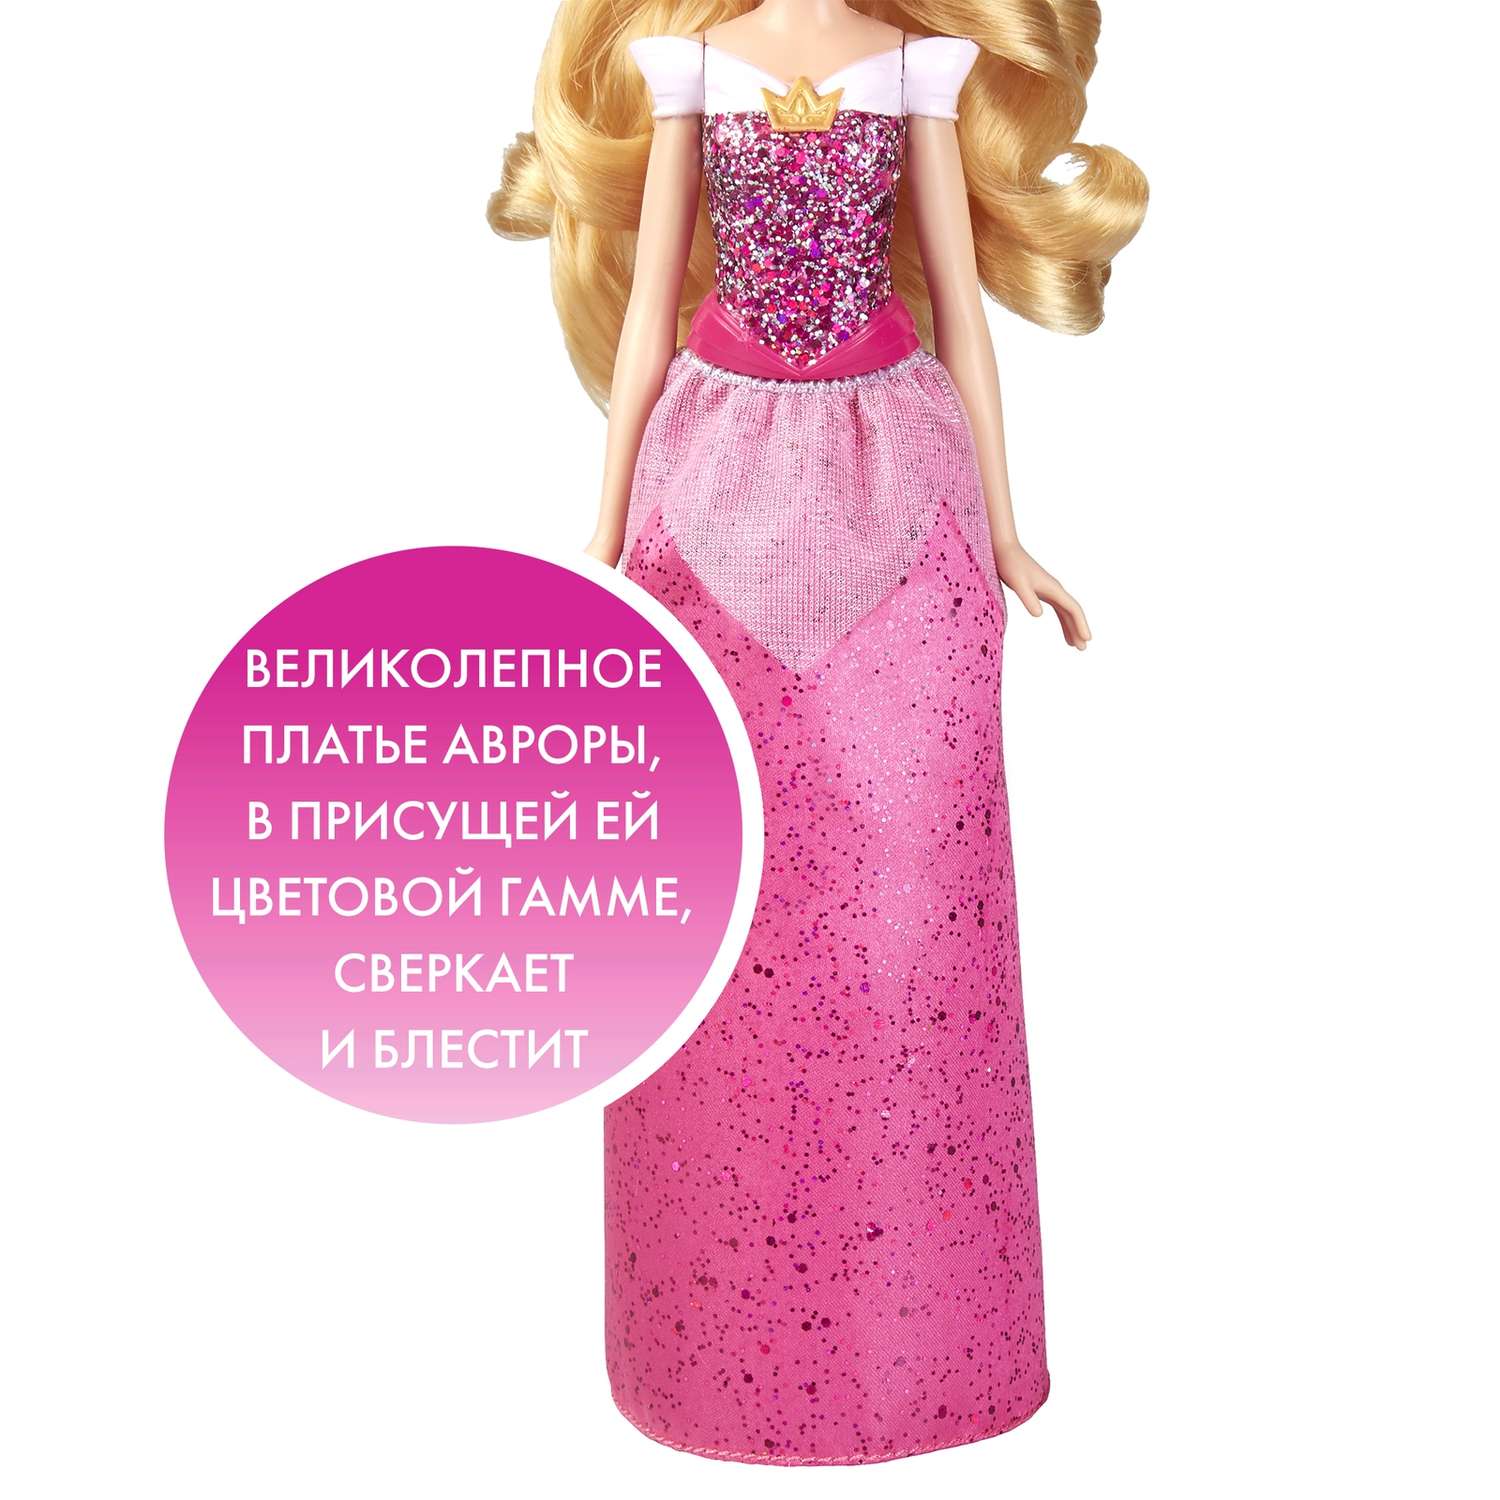 Кукла Disney Princess Hasbro B Аврора E4160EU4 E4021EU4 - фото 14